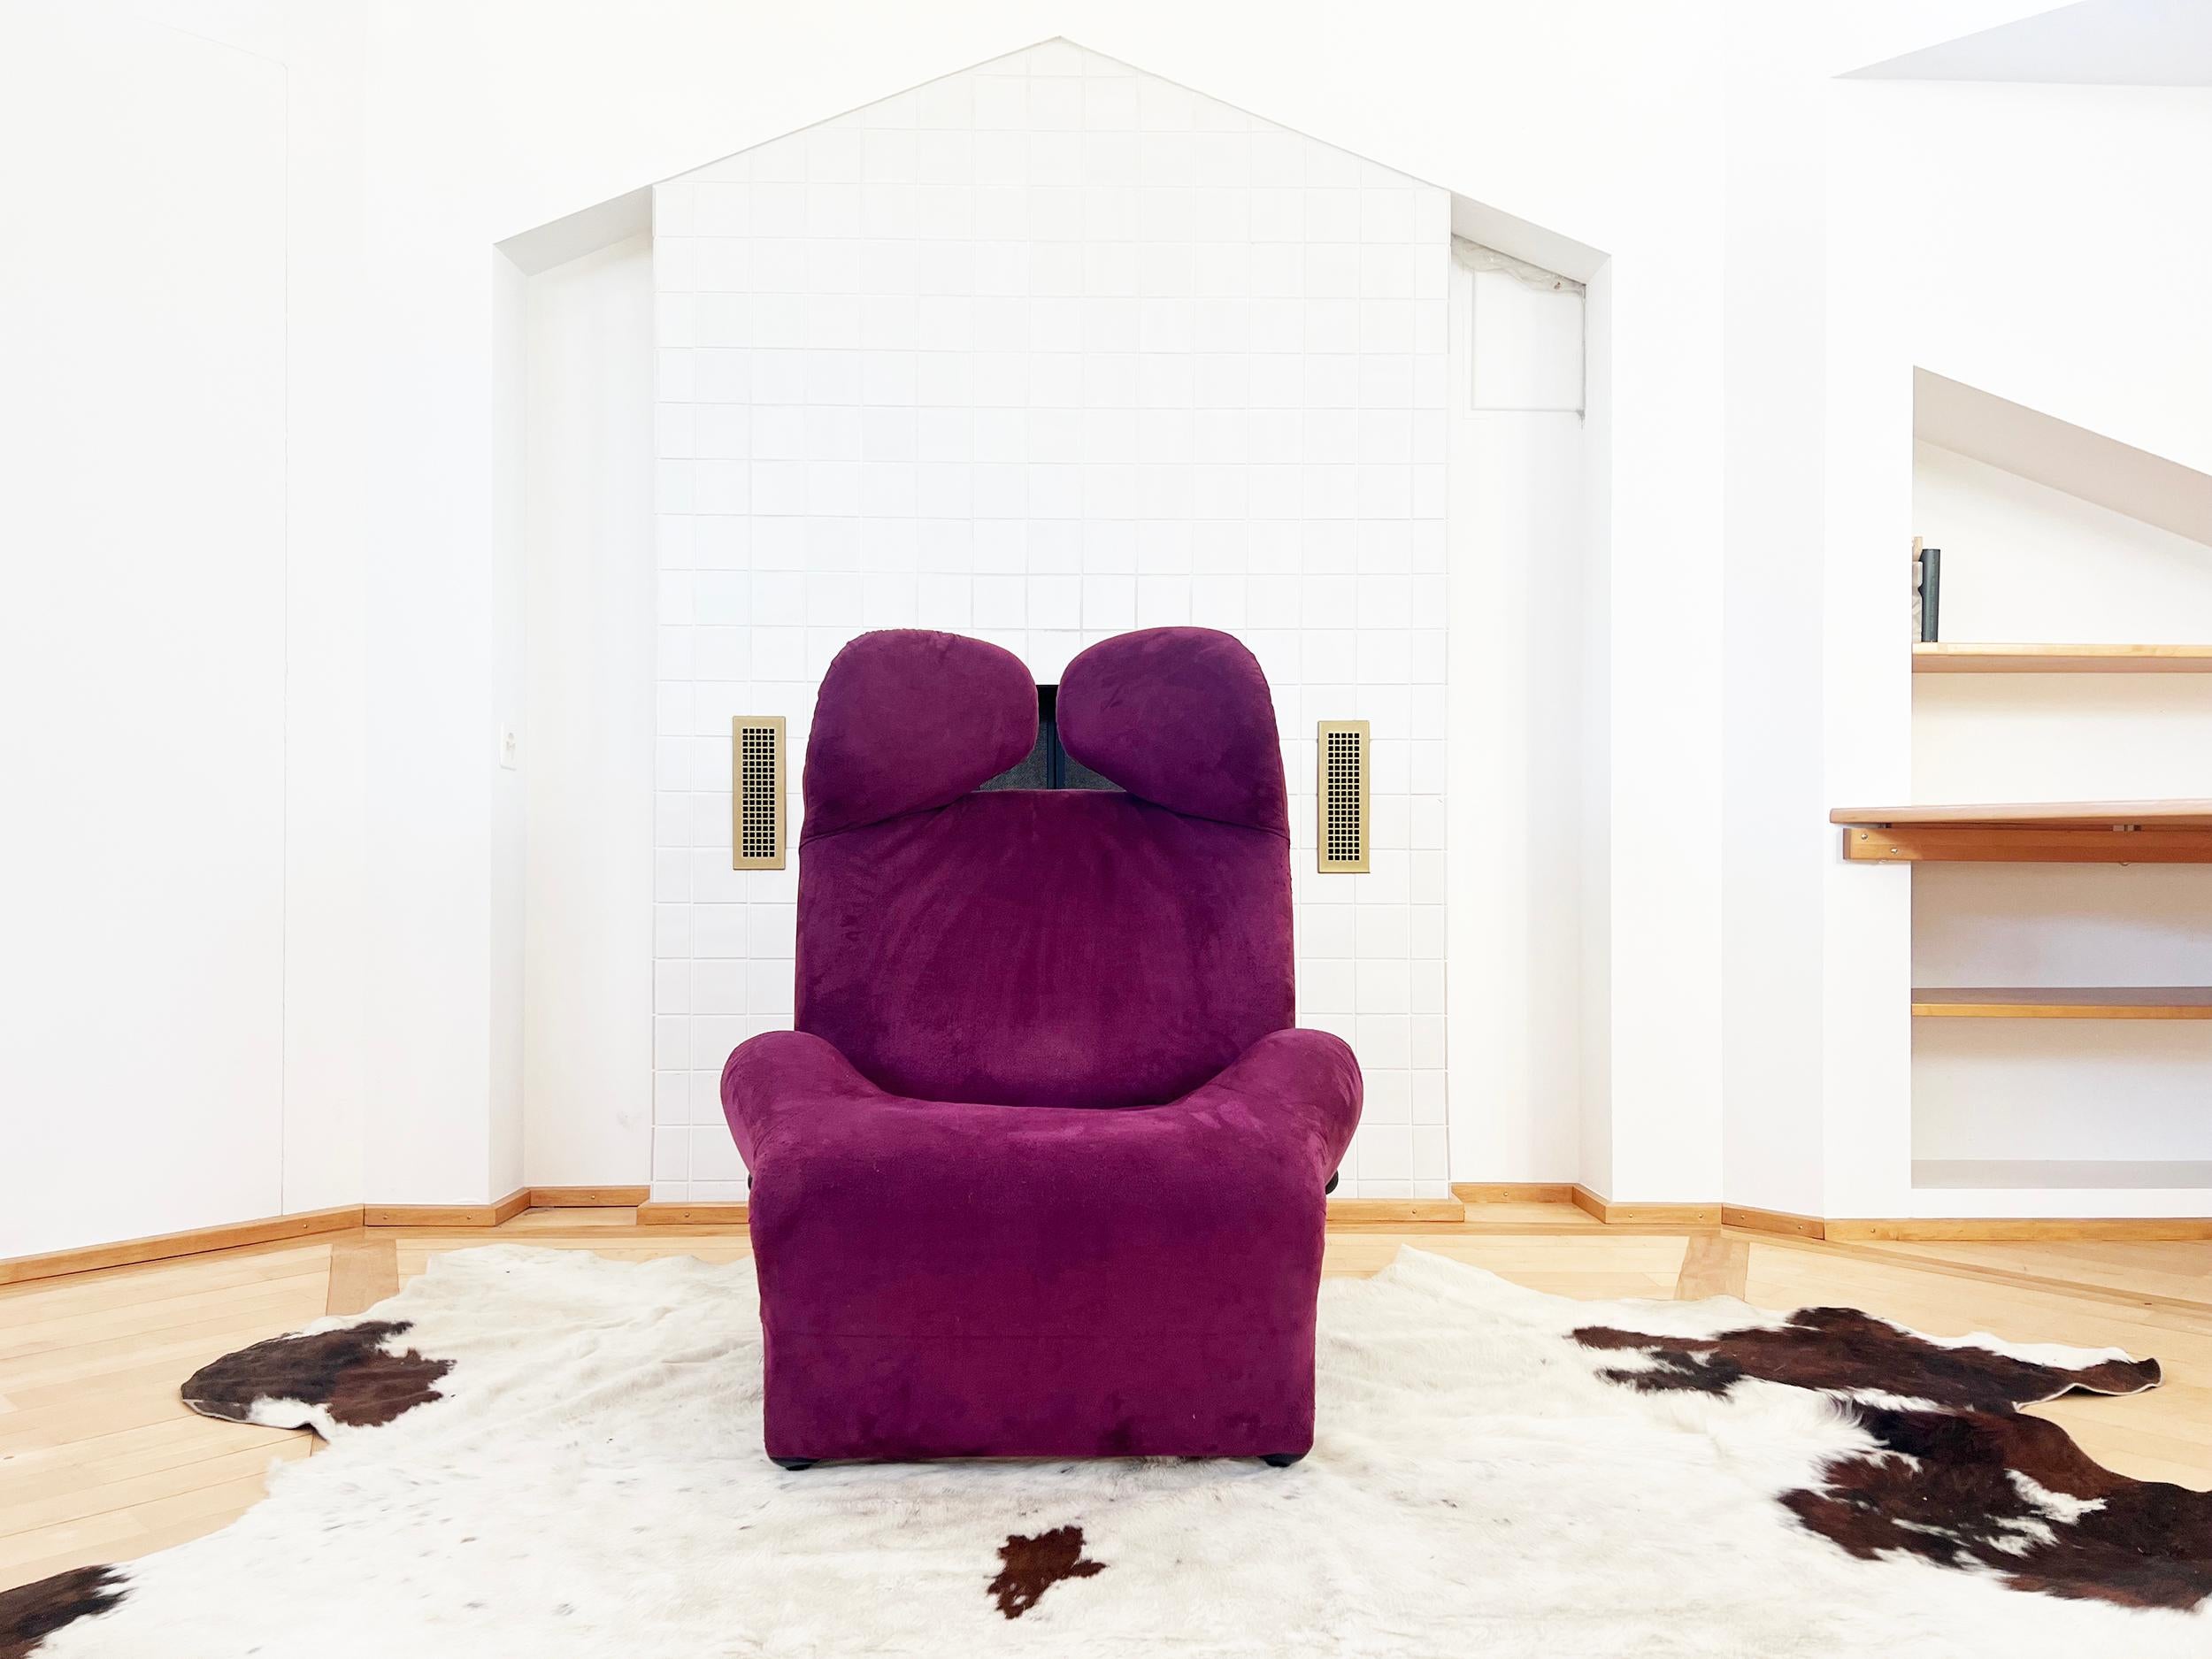 Fantastique chaise longue 111 Wink de Toshiyuki Kita pour Cassina, Italie, années 80, dans le plus parfait des textiles en daim violet.

Il s'agit d'une version très cool de la Chaise Longue conçue par le designer japonais Toshiyuki Kita pour la